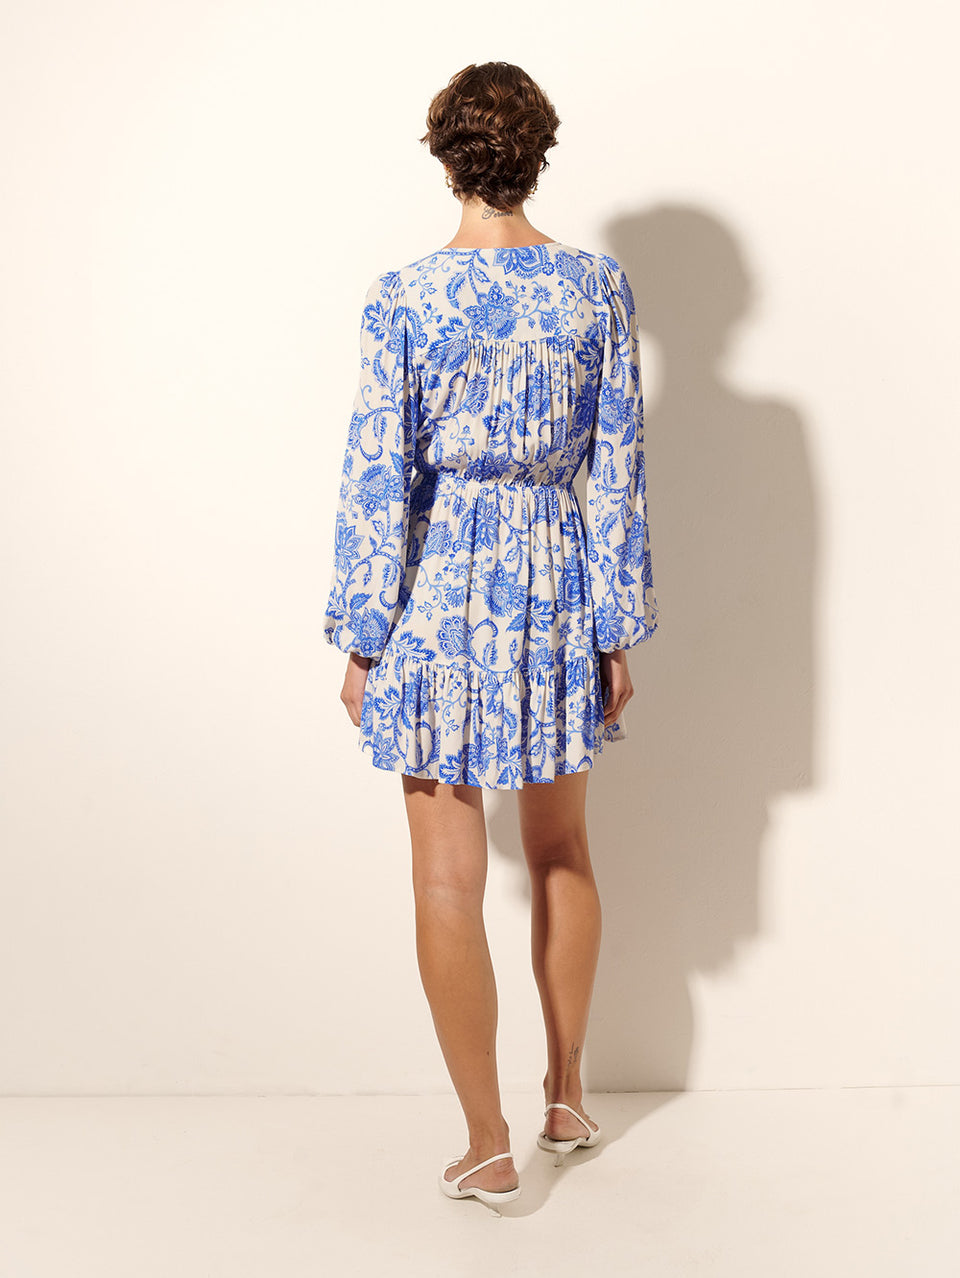 Athena Tie Front Mini Dress KIVARI | Model wears blue and white paisley mini dress back view